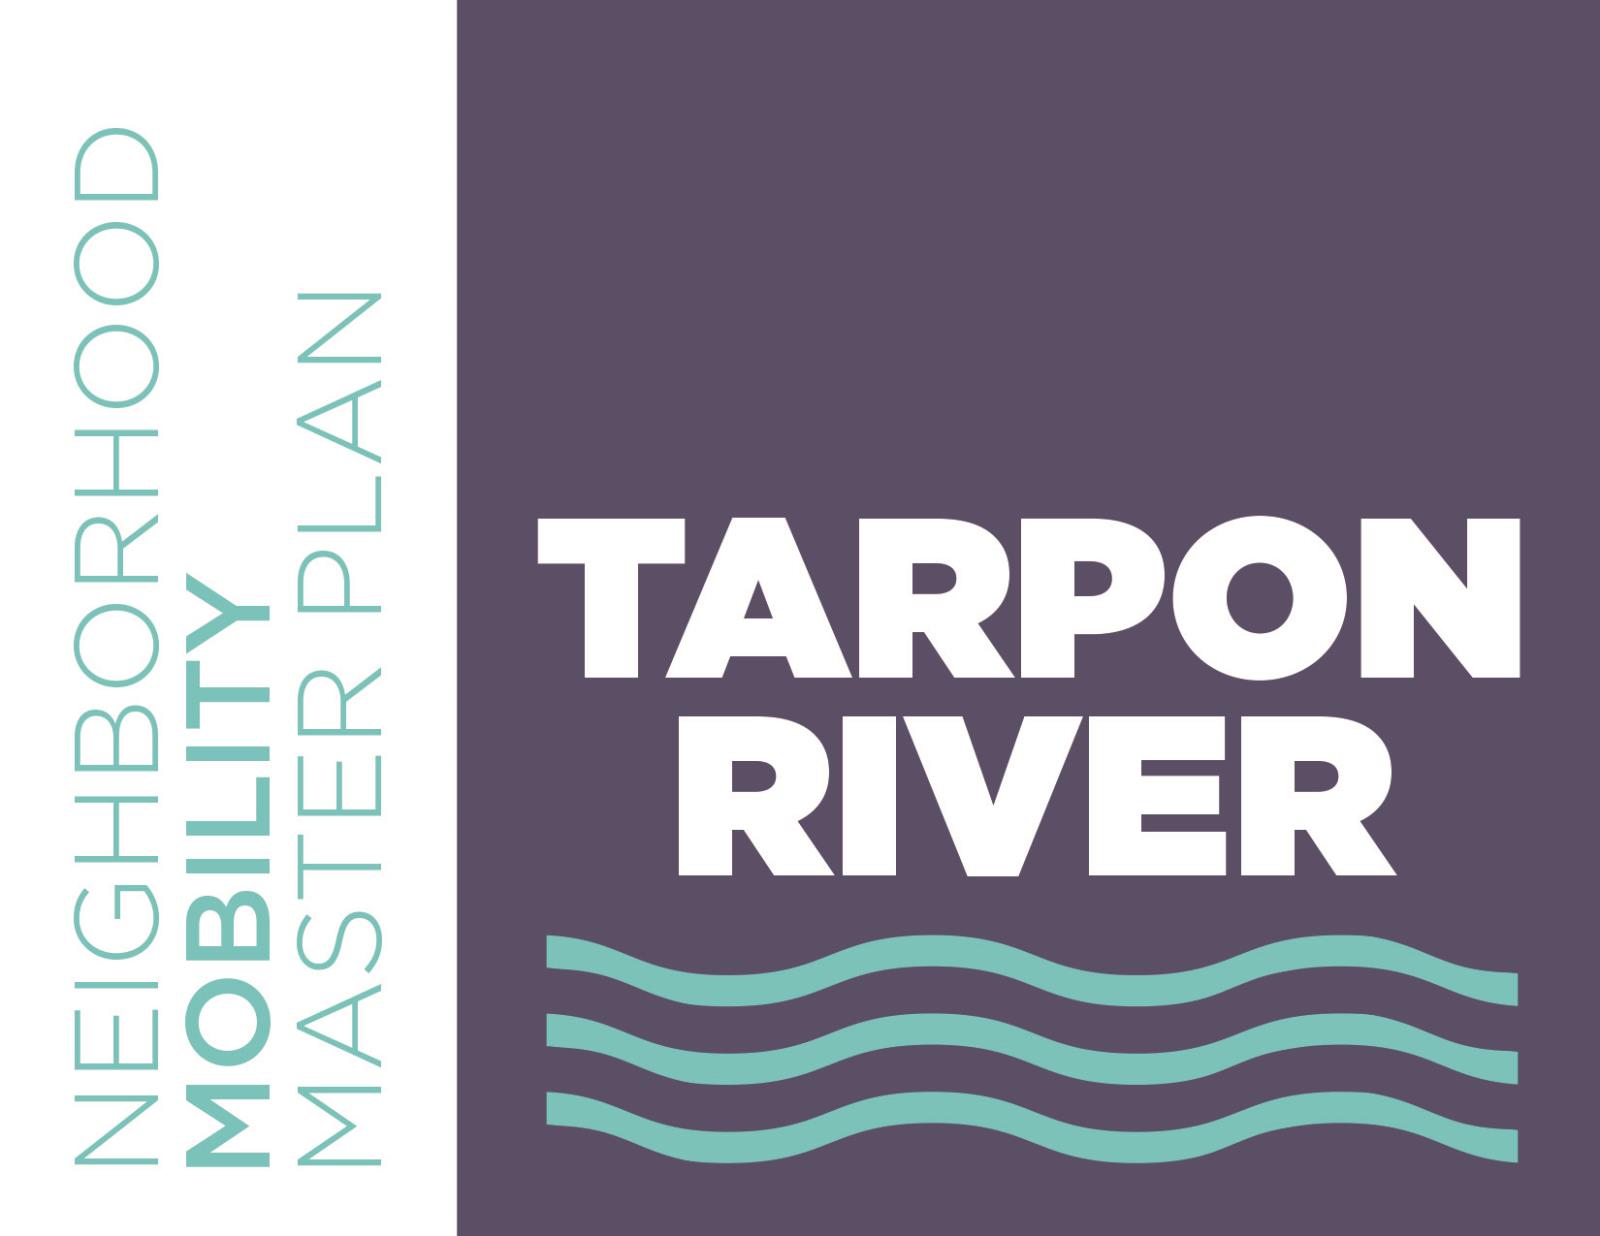 Tarpon River Master Plan